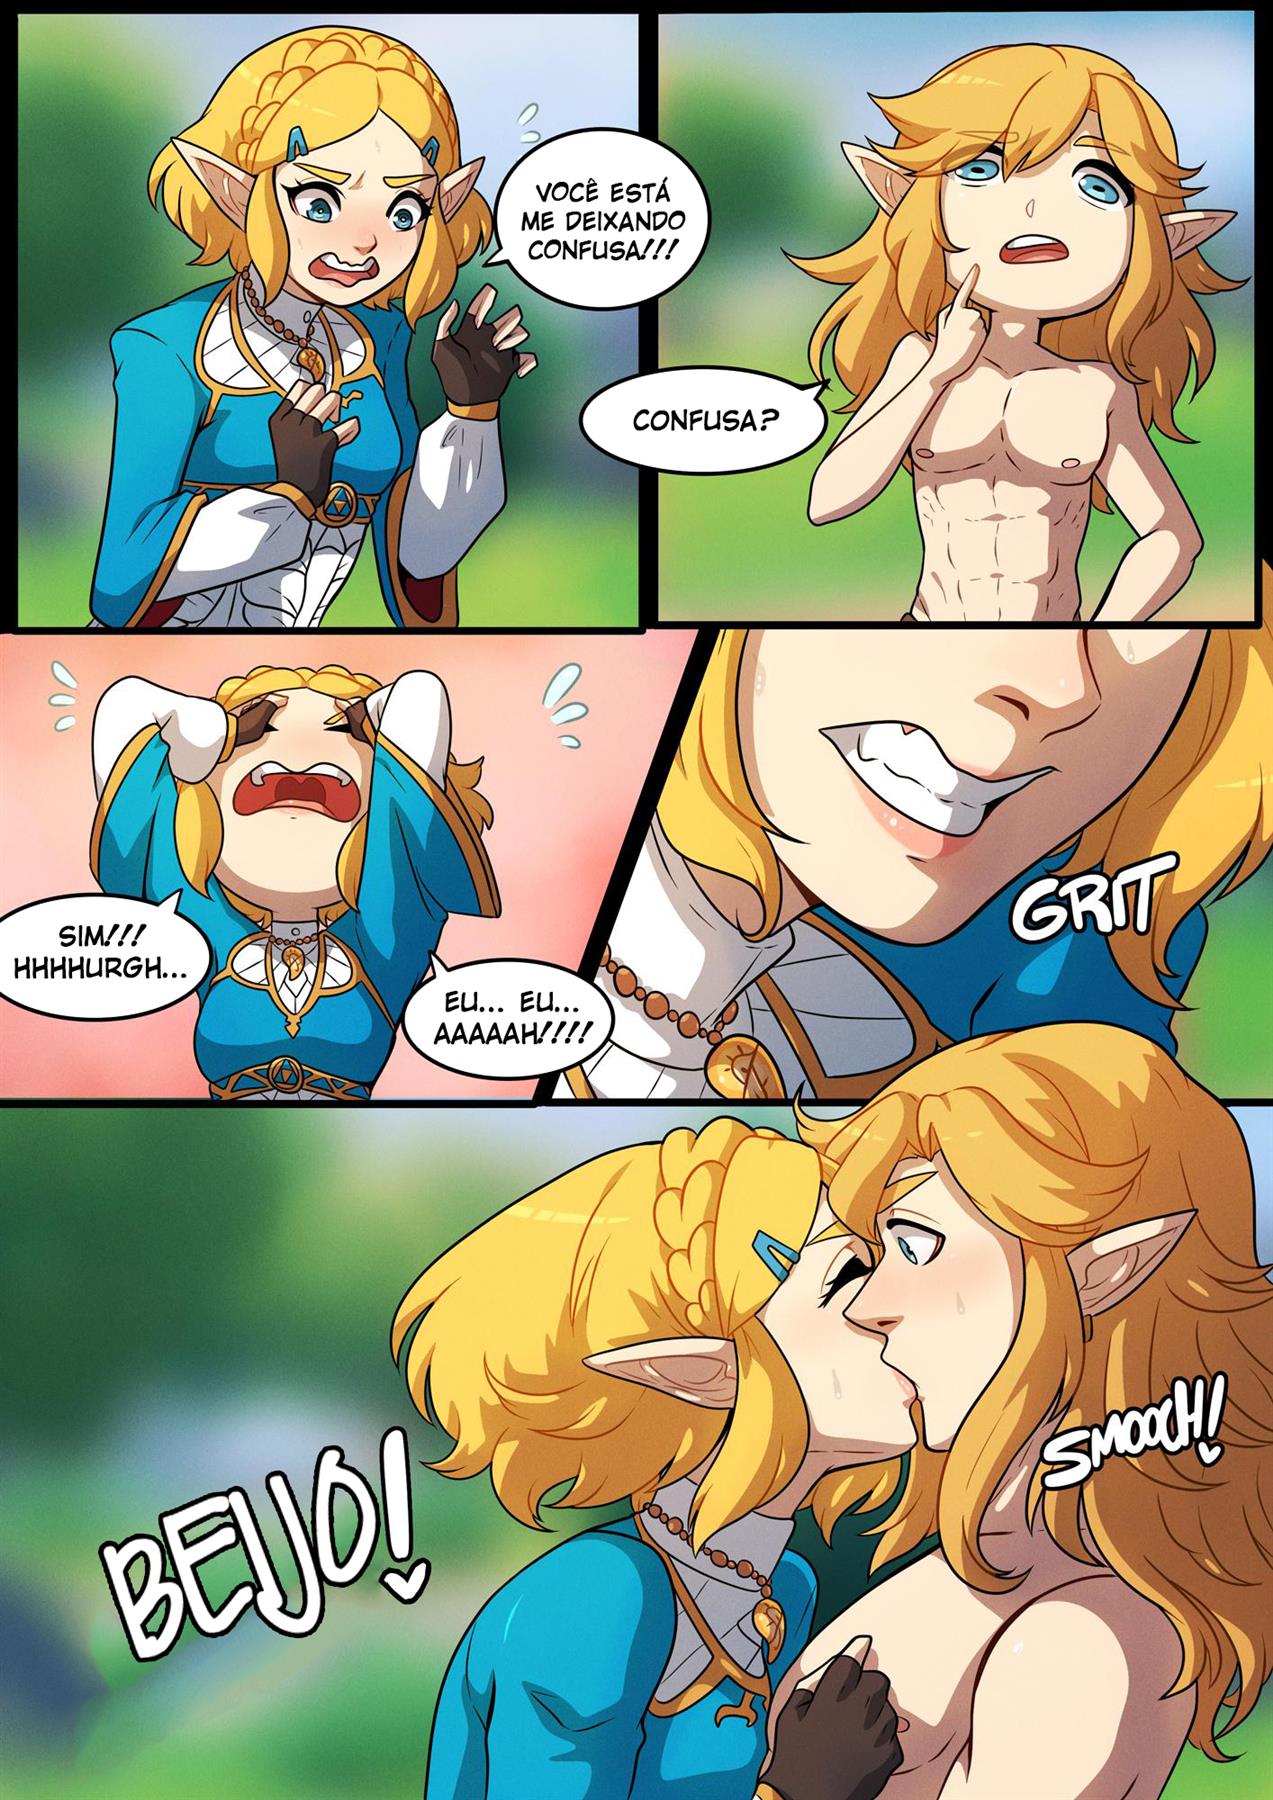 Uma noite com Zelda